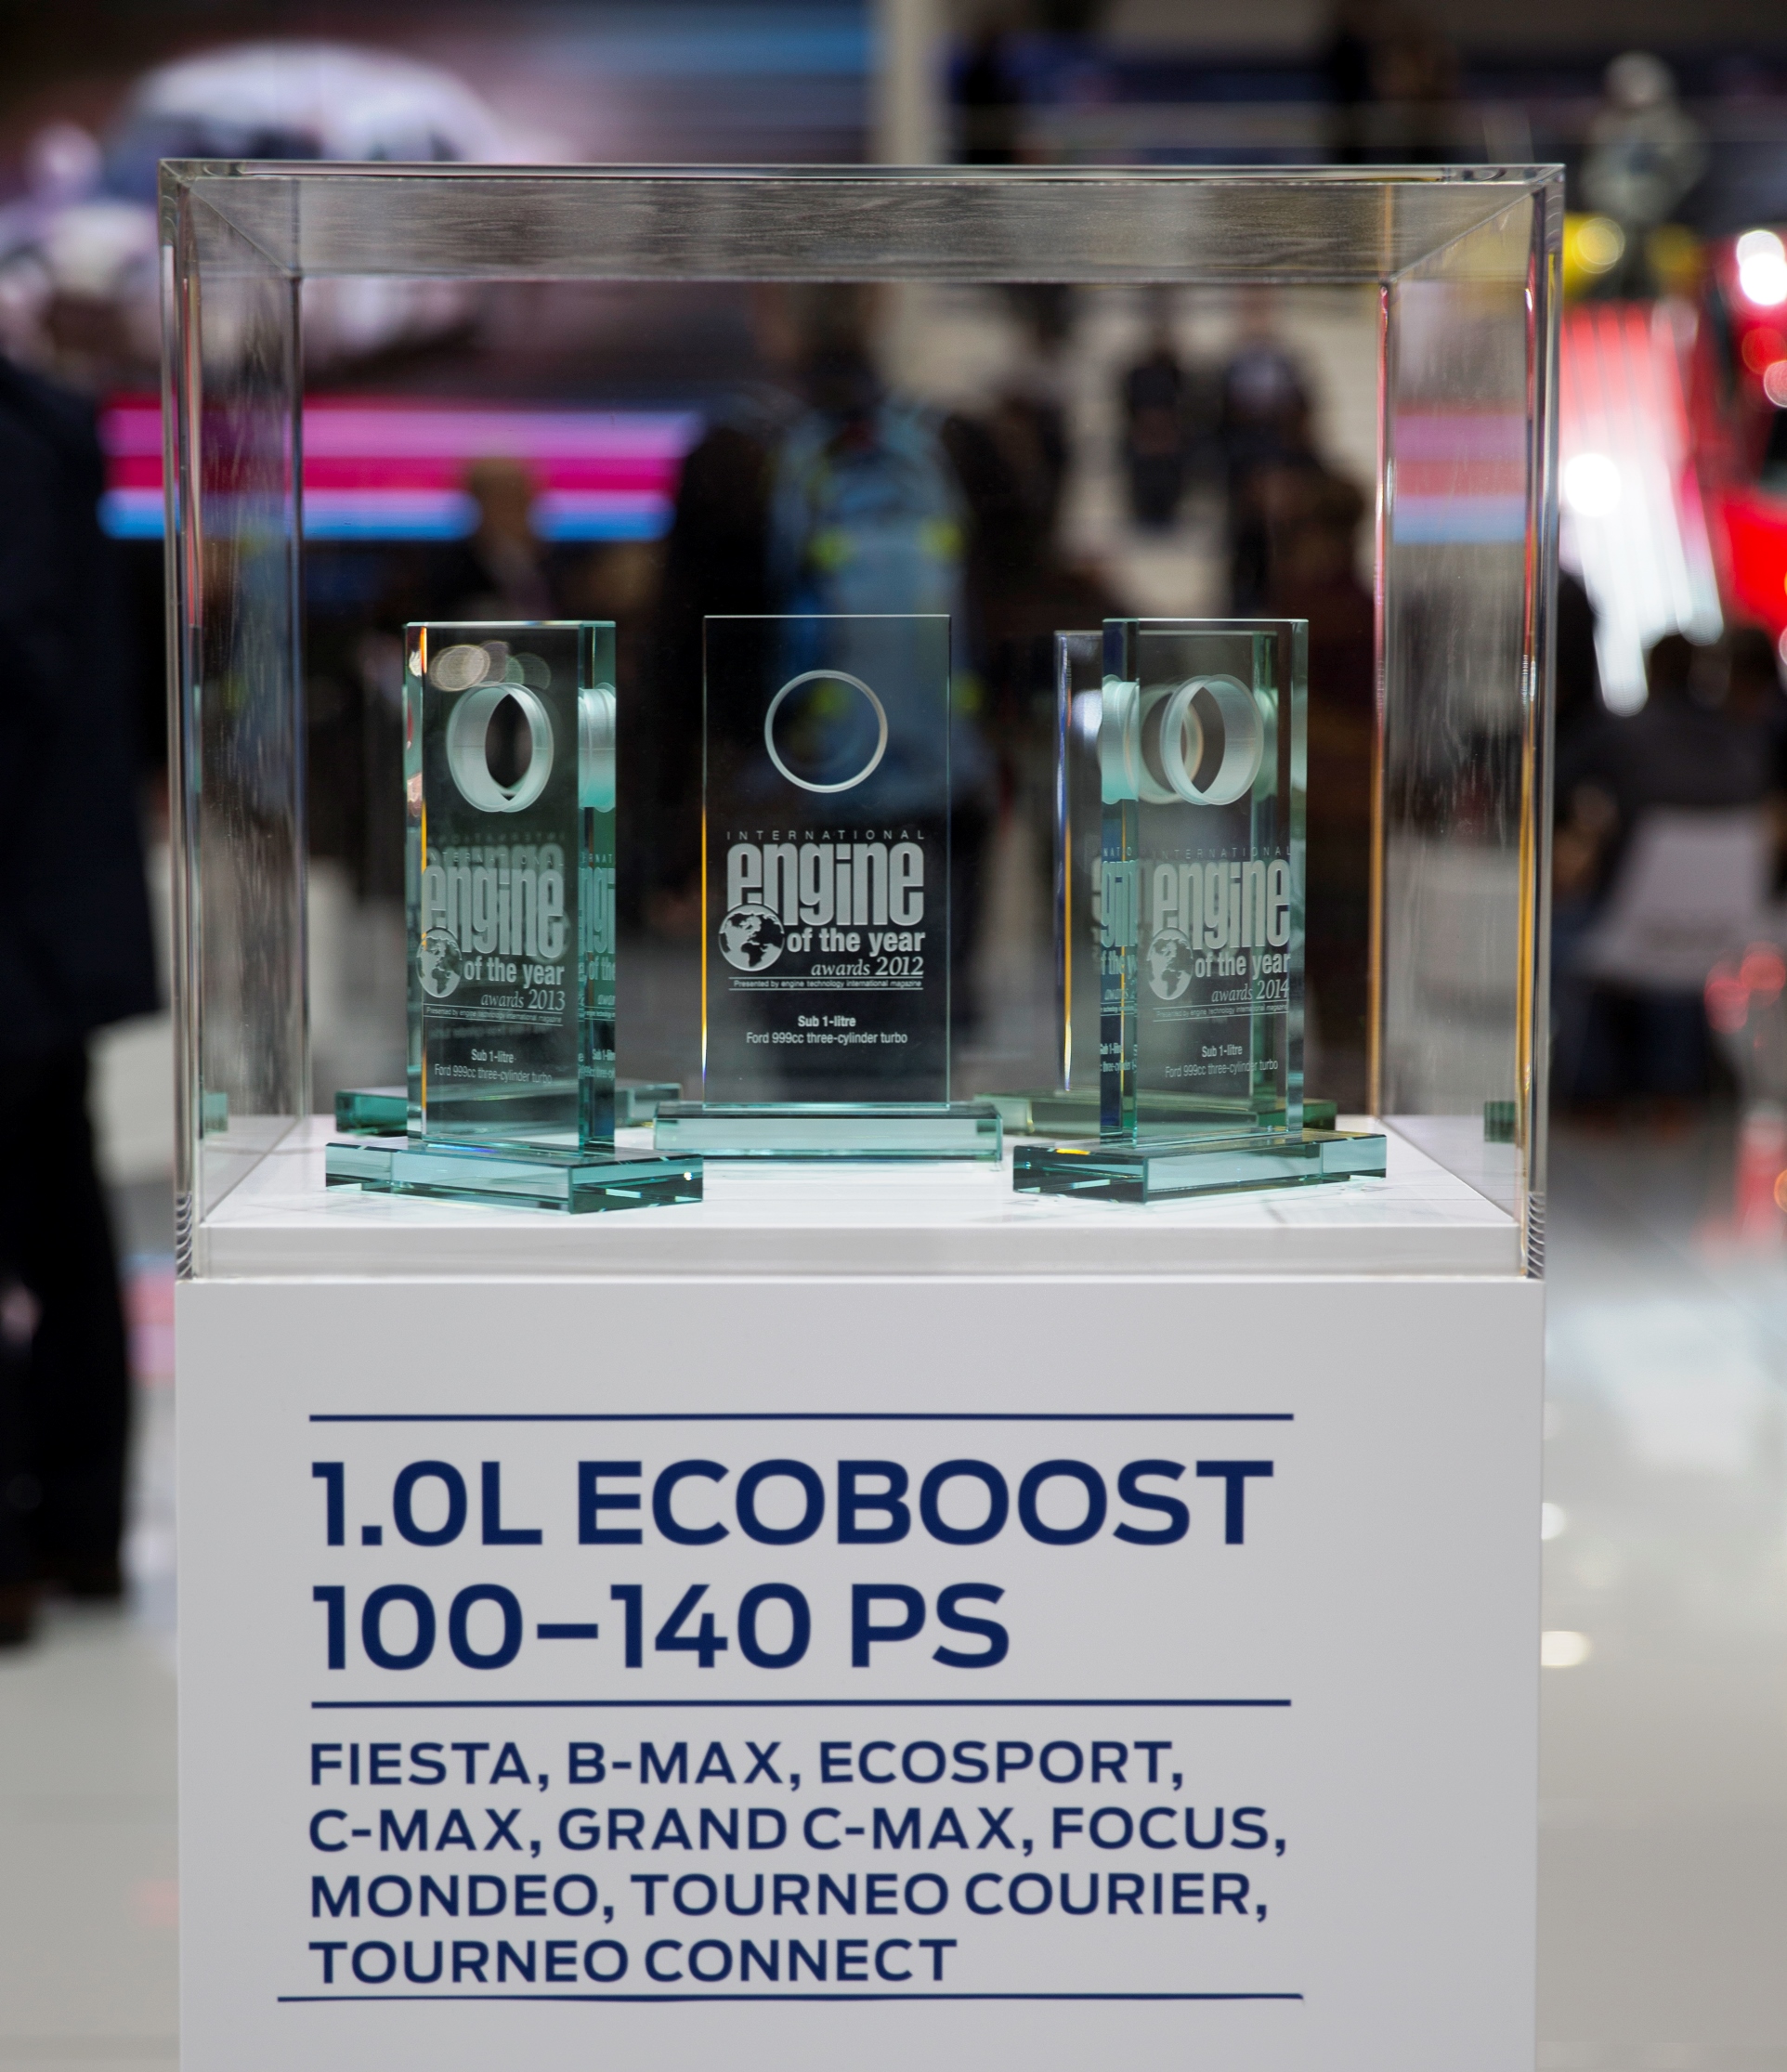 Fordov jednolitarski EcoBoost motor “Međunarodni motor godine” šestu godinu zaredom